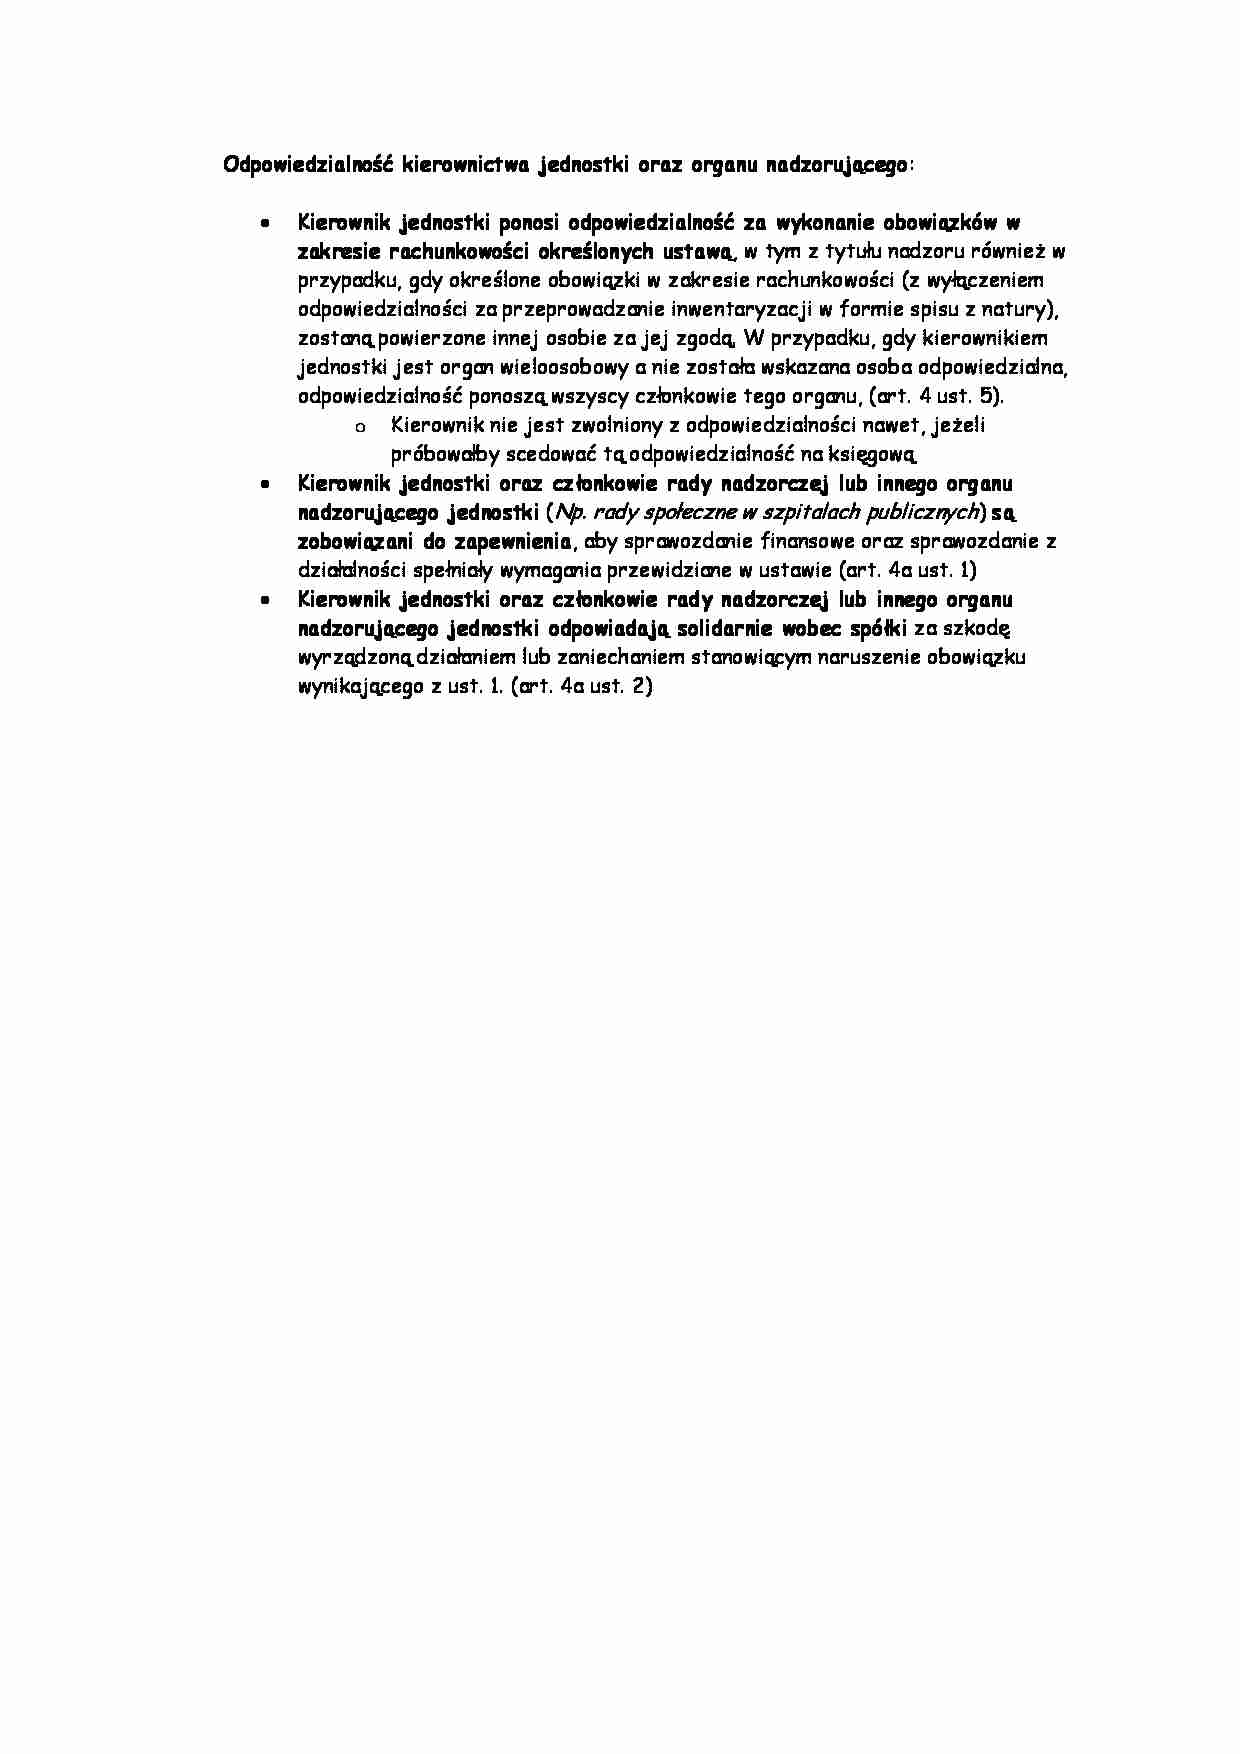 Odpowiedzialność kierownictwa jednostki oraz organu nadzorującego -opracowanie - strona 1